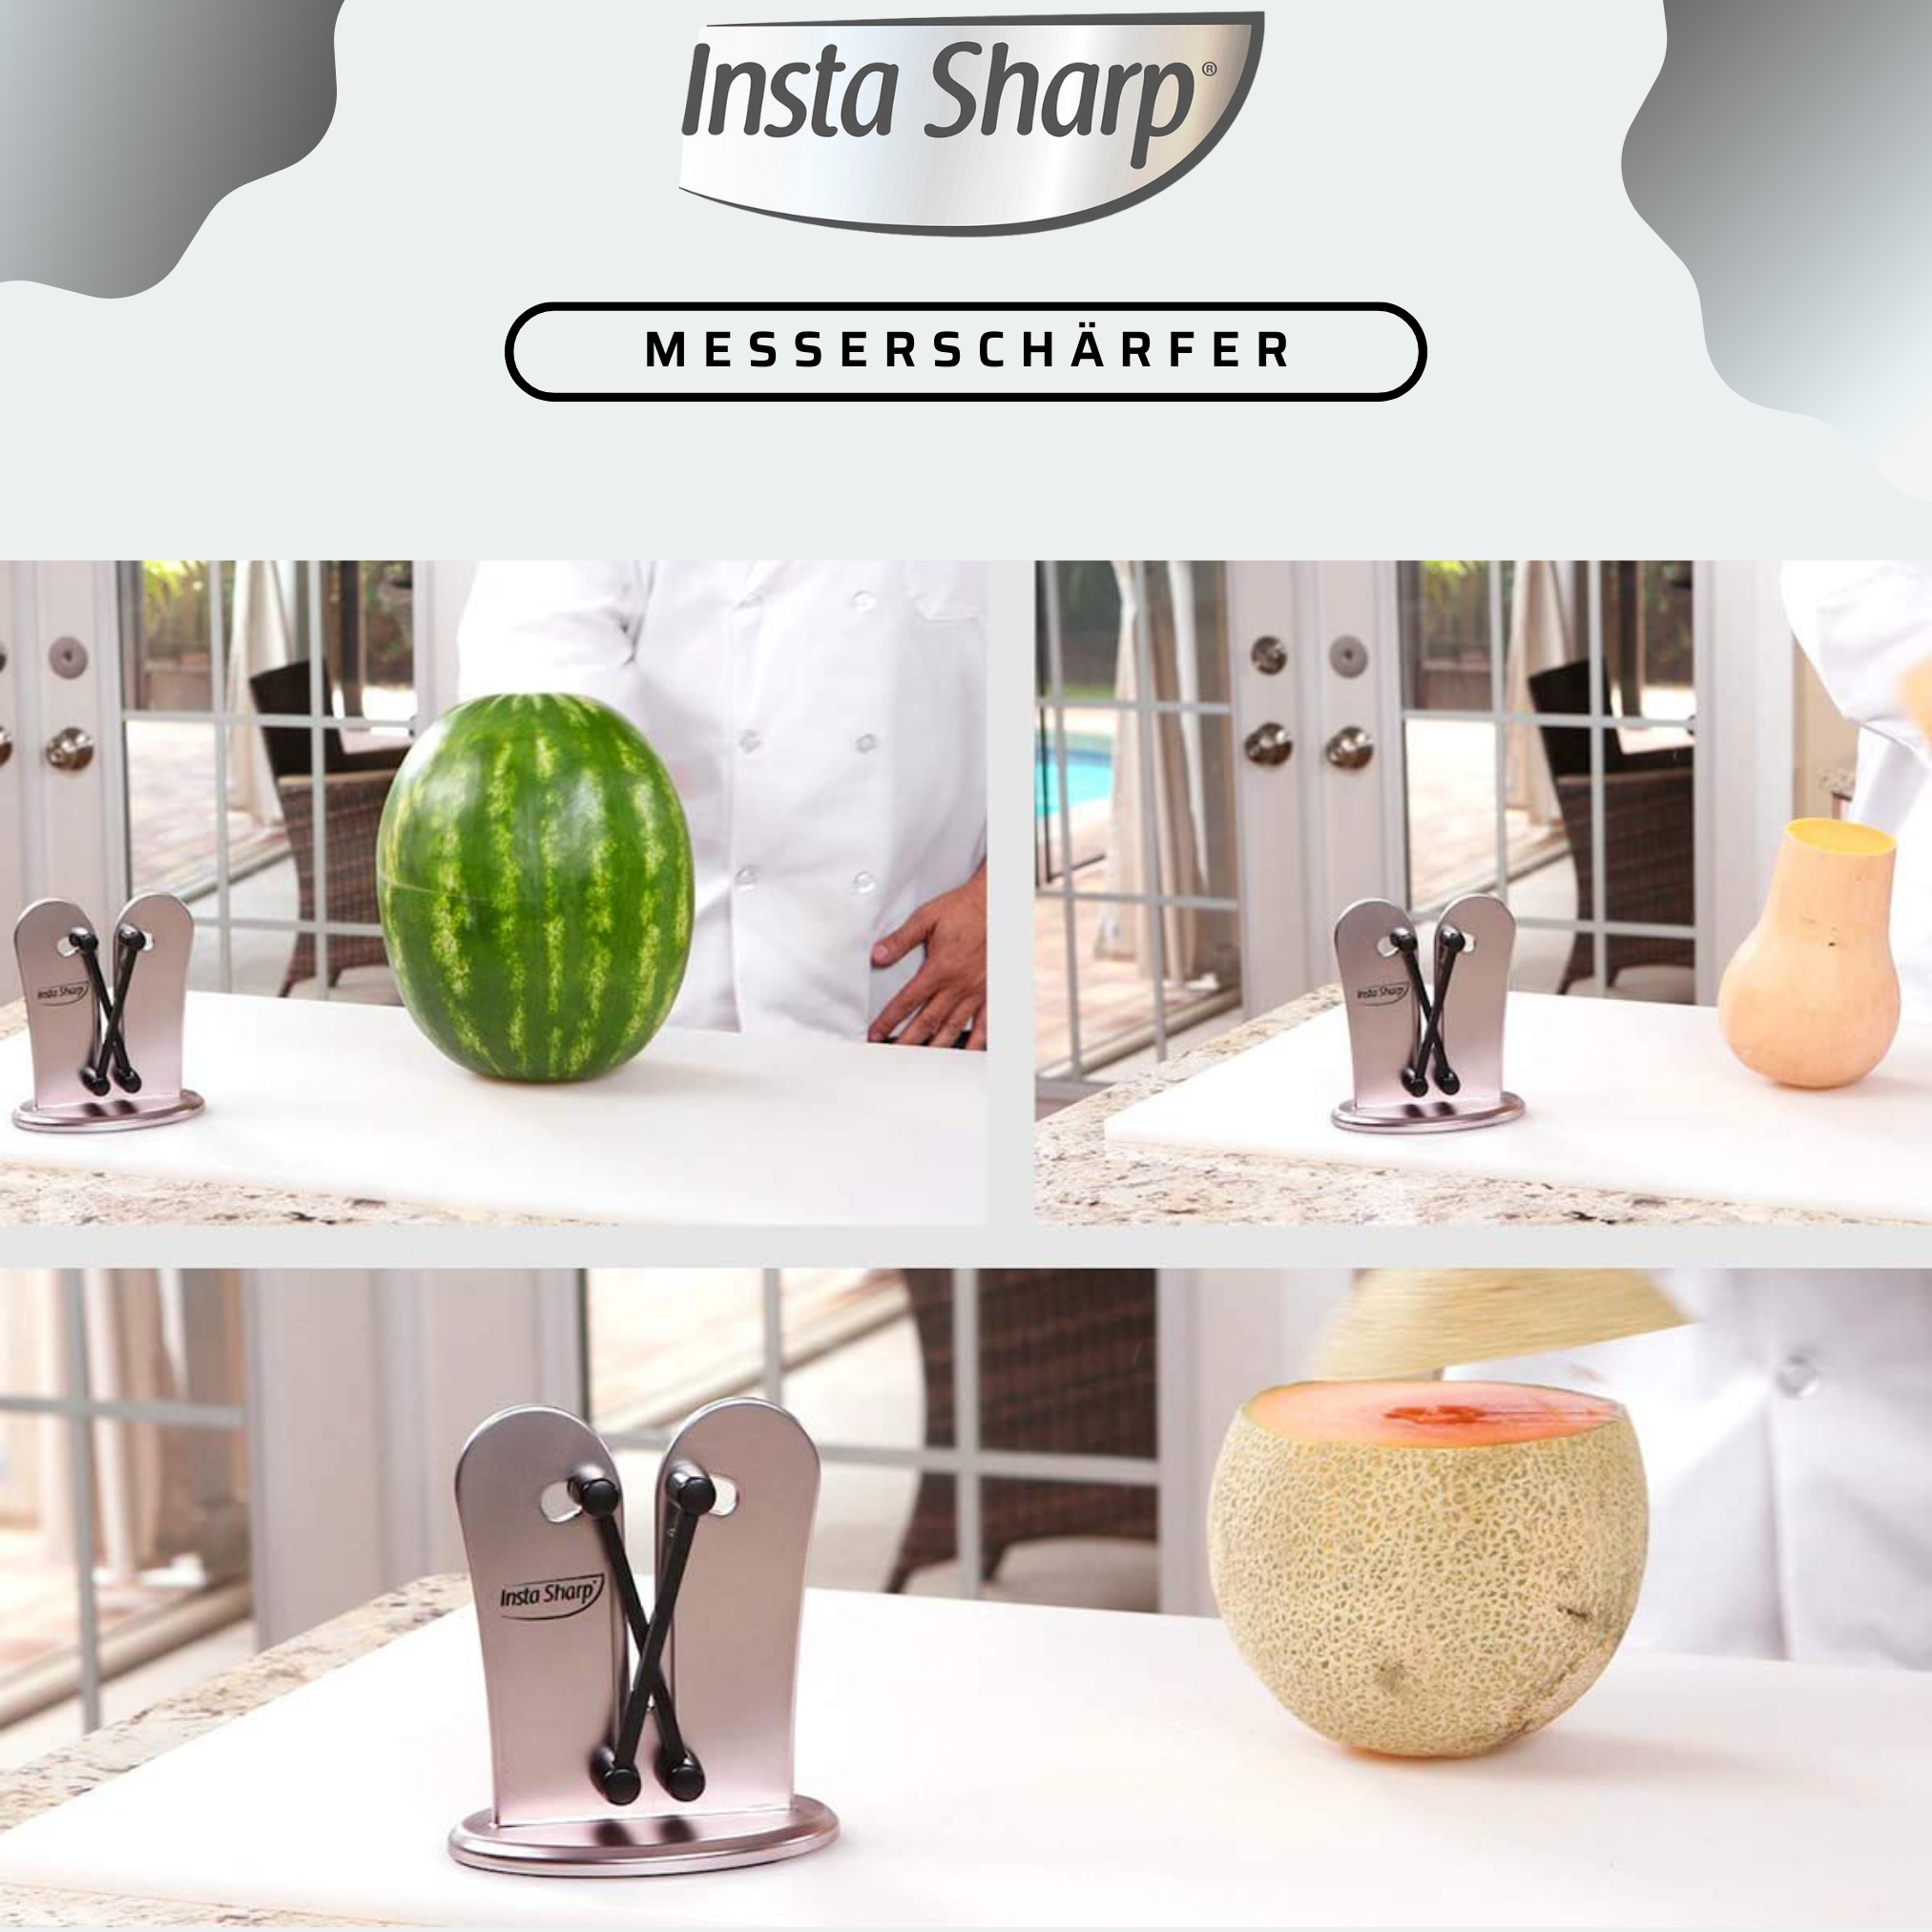 Sharp® Messerschärfer Insta BEST Messerschärfer DIRECT